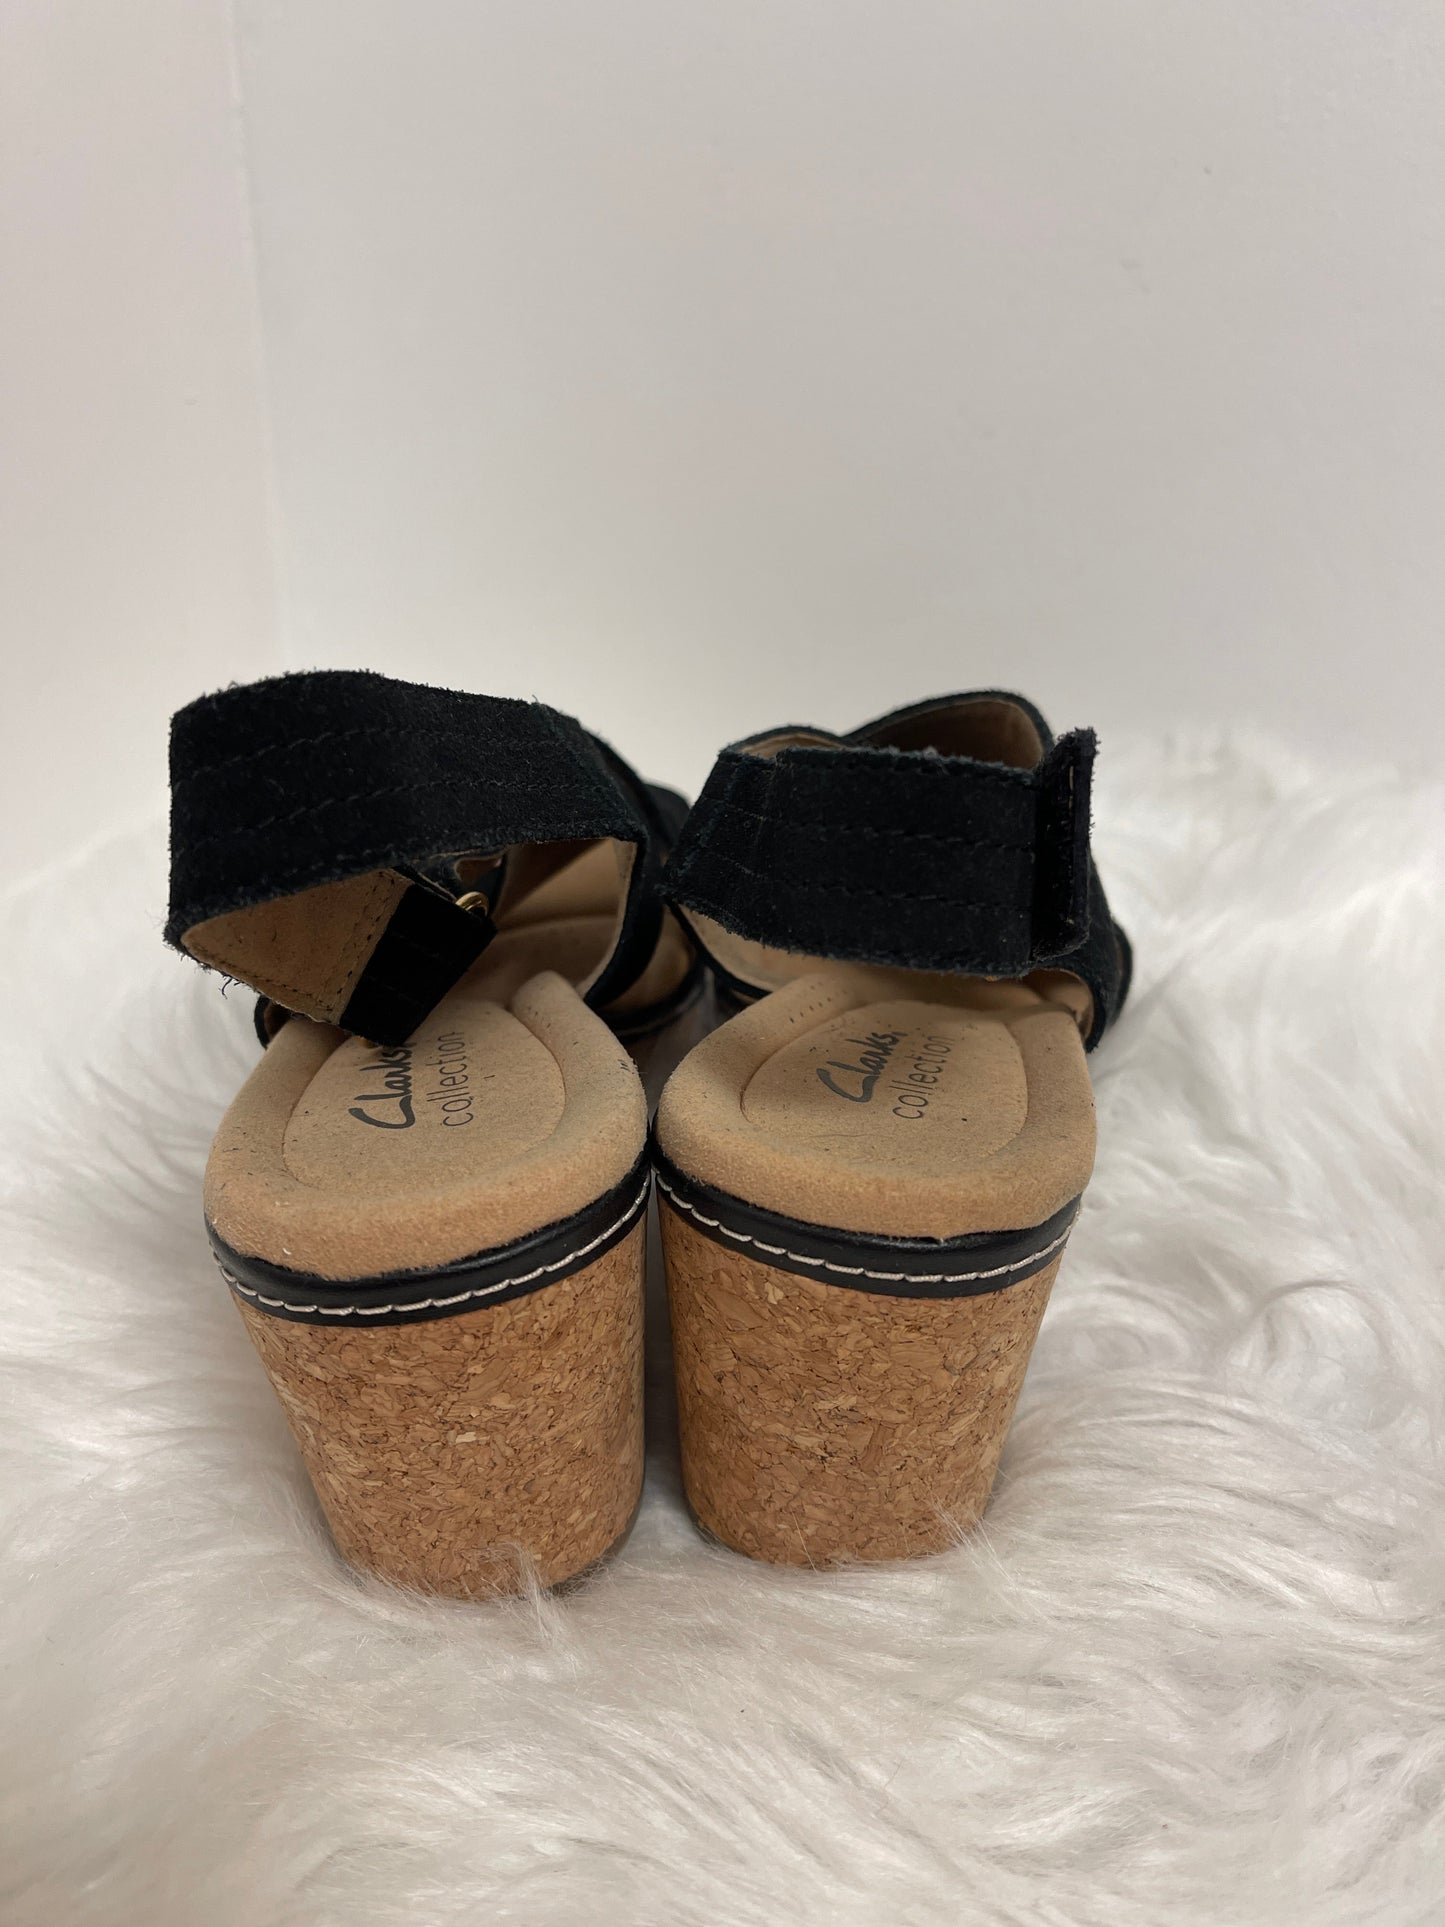 Black Sandals Heels Block Clarks, Size 8.5